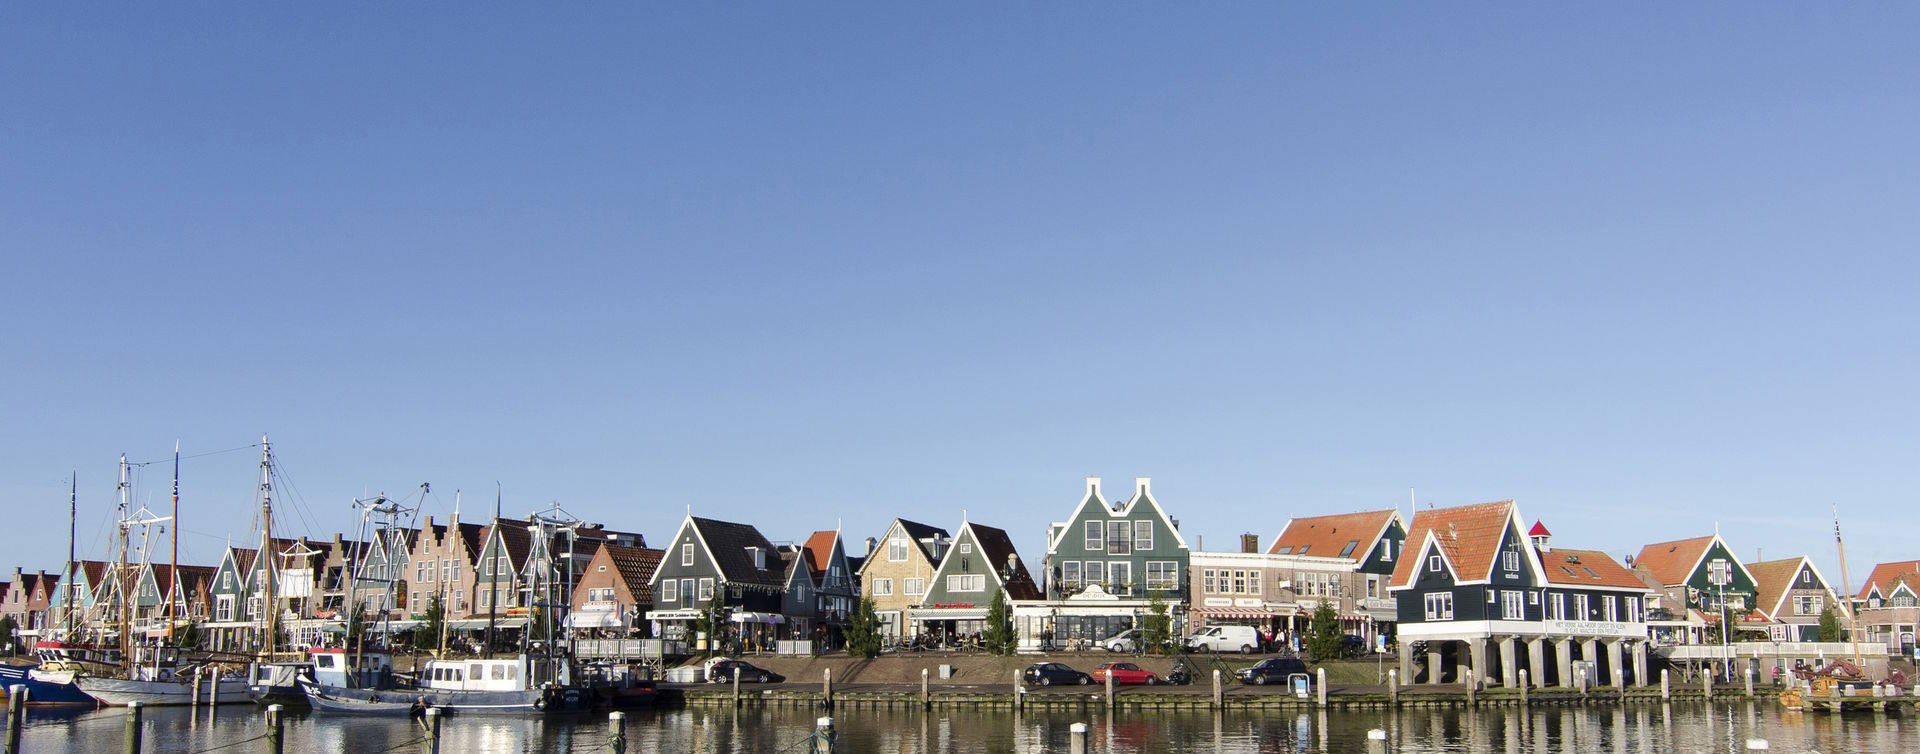 De omgeving van nemassdeboer, RegioBank in Volendam